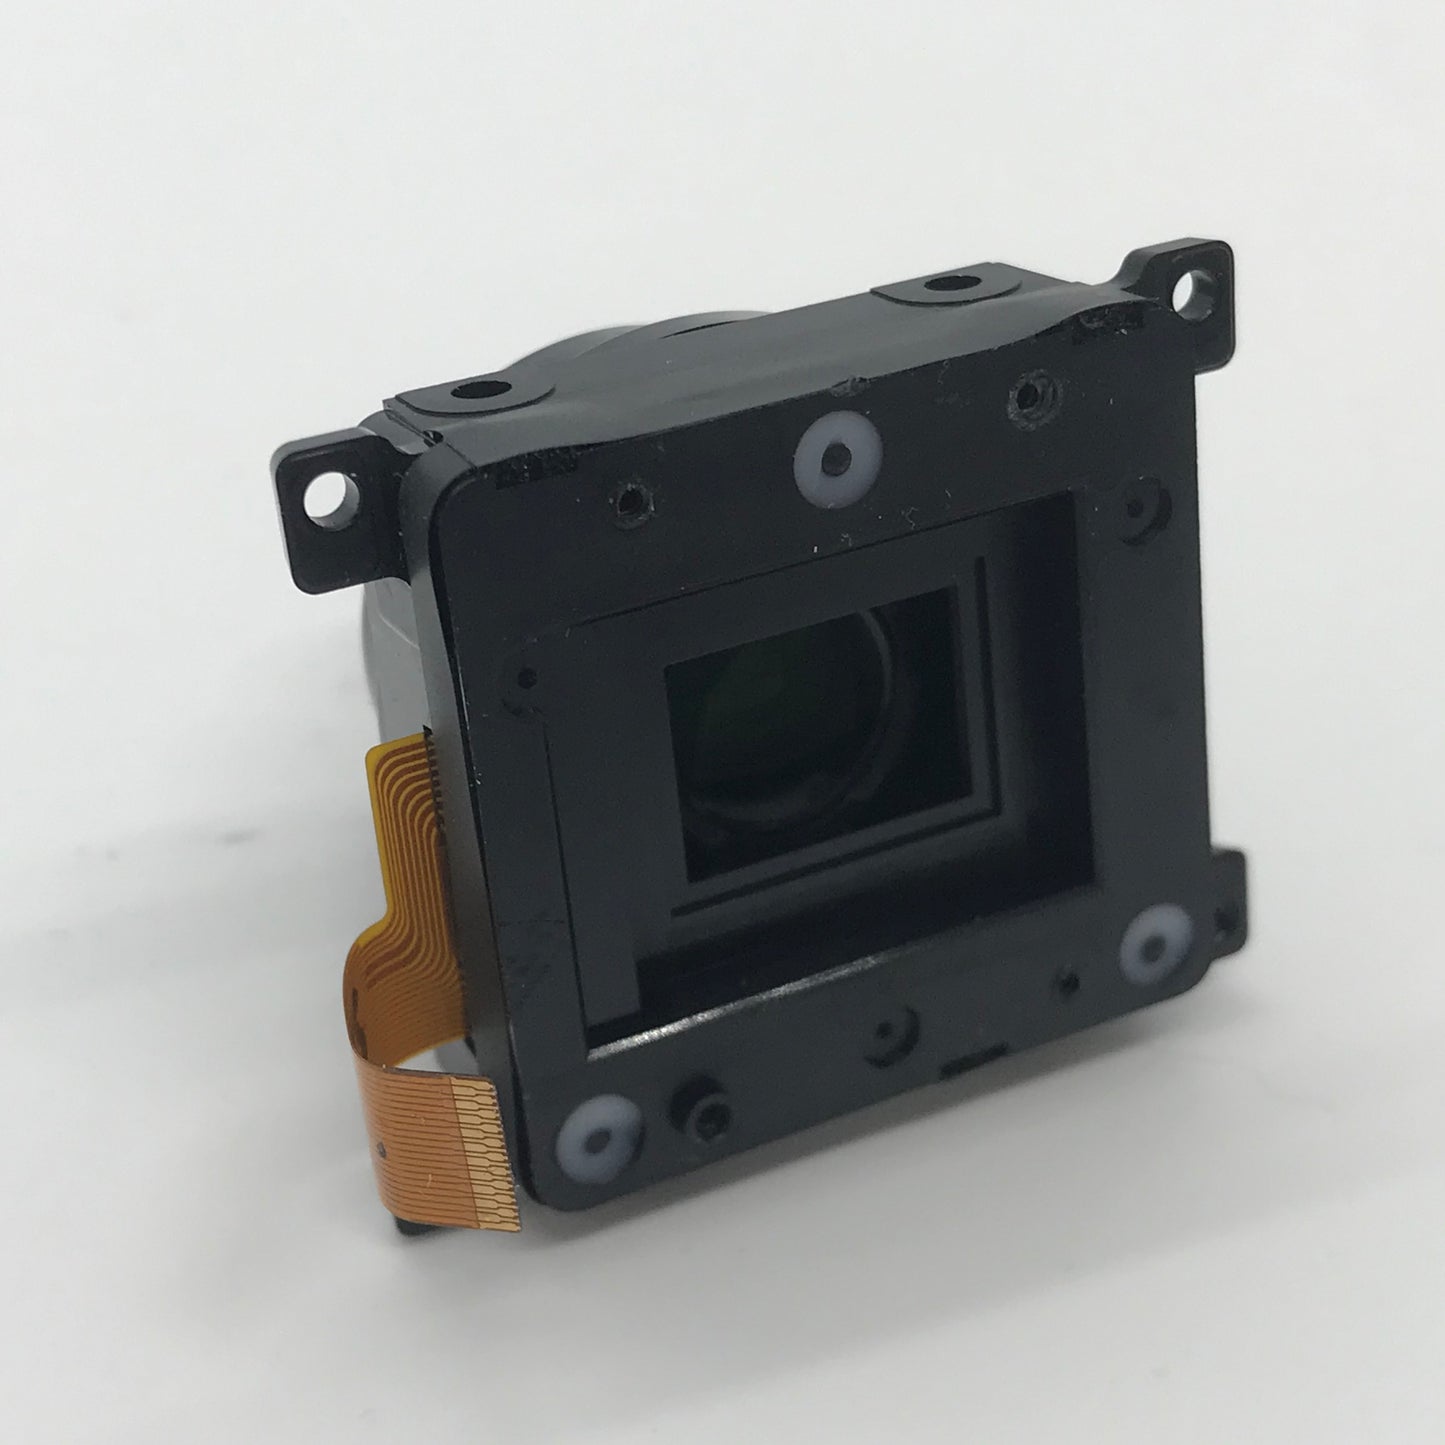 DJI Phantom 4 Pro Camera Repair Lens Replacement Part